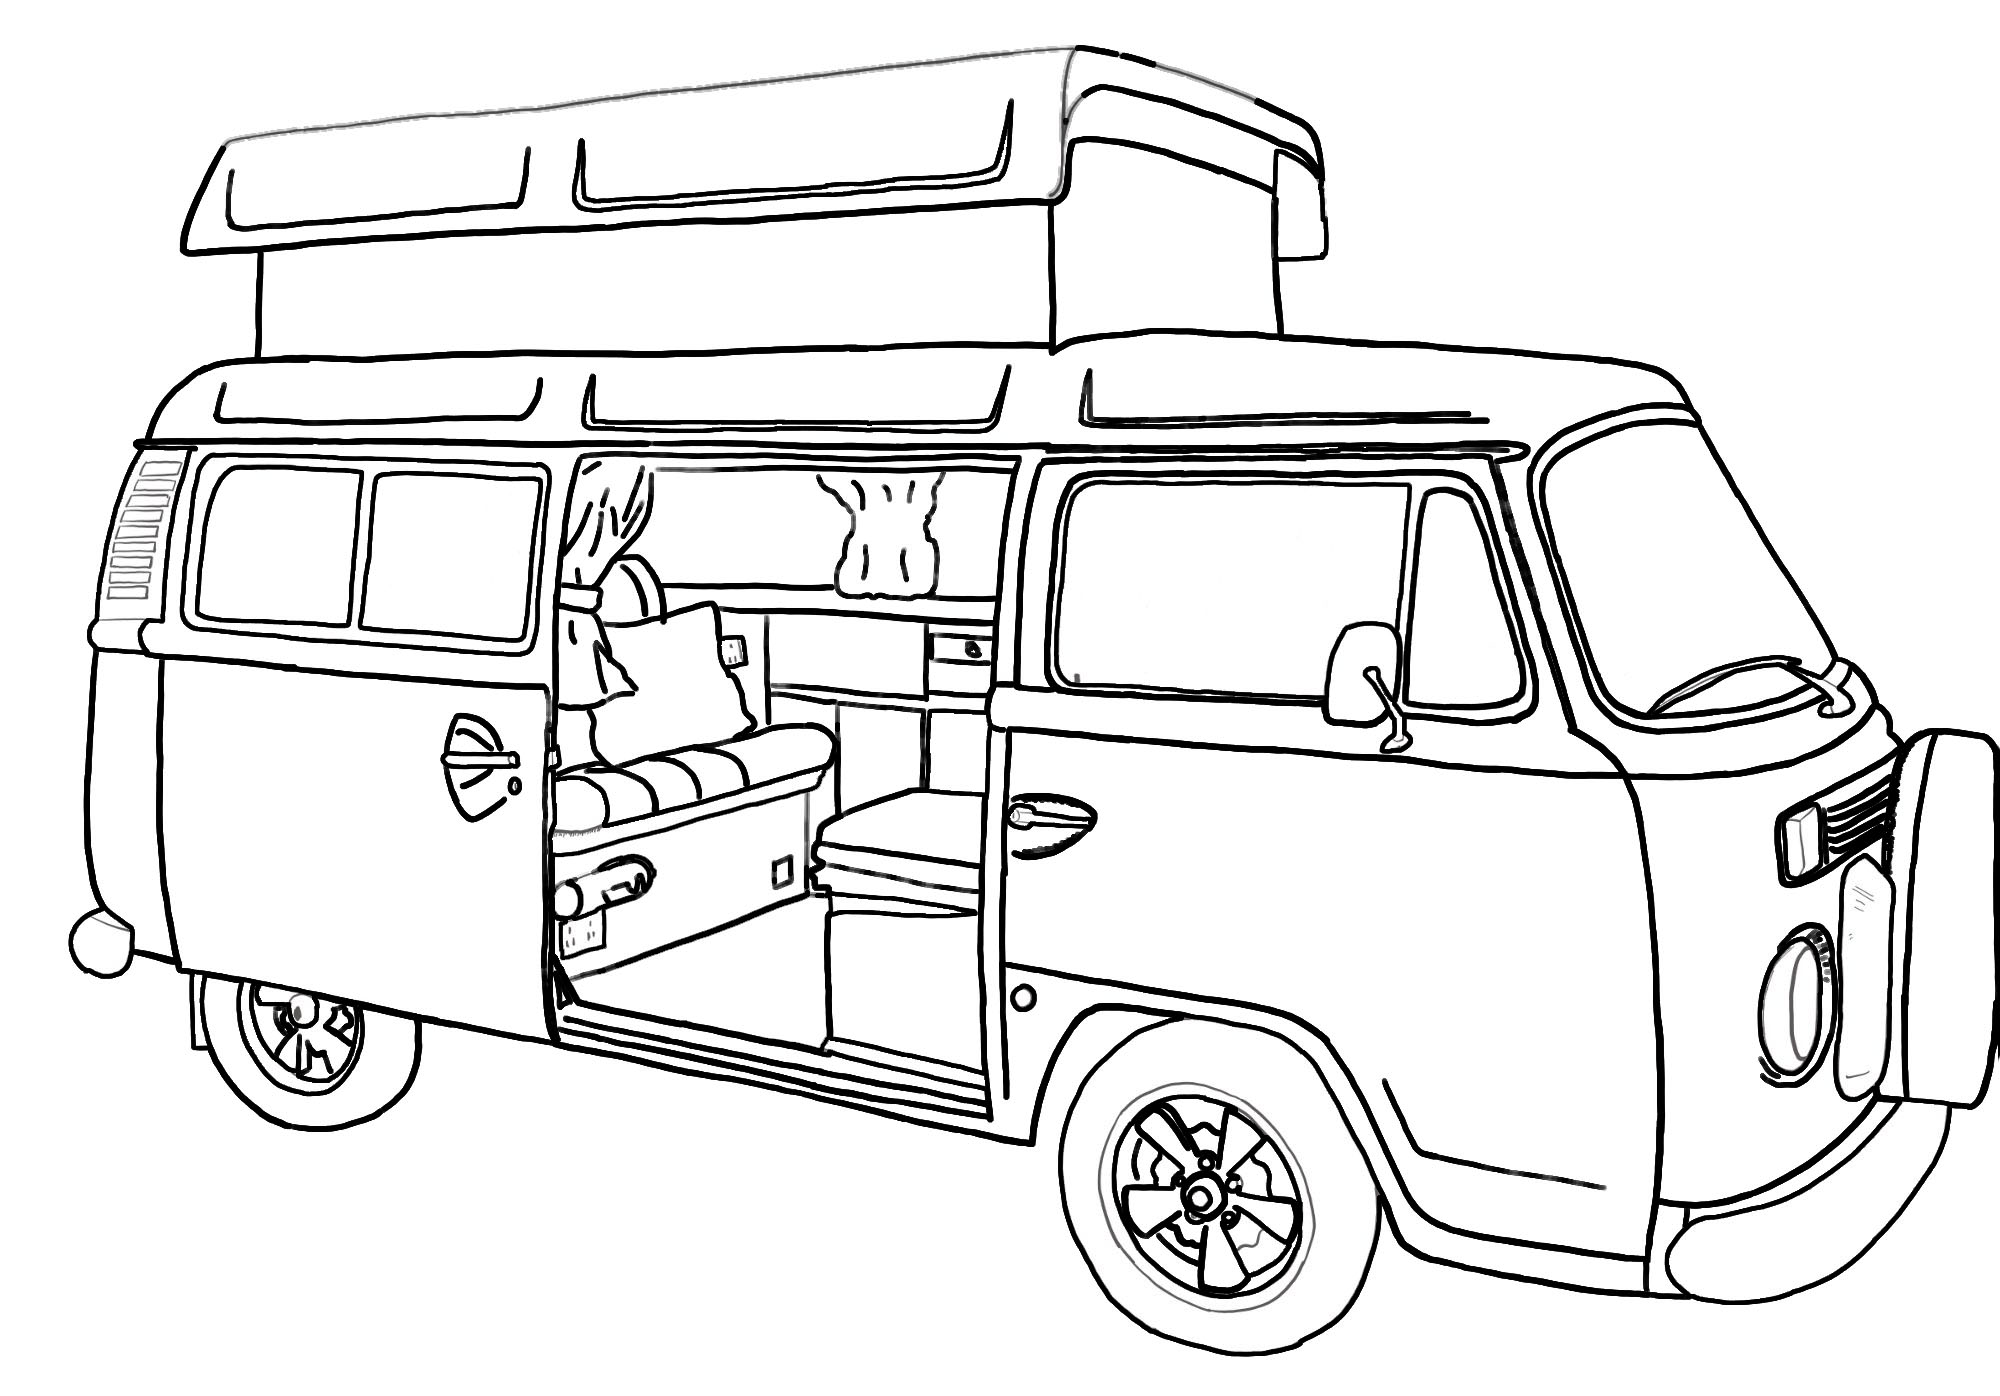 Drawing of Campervan